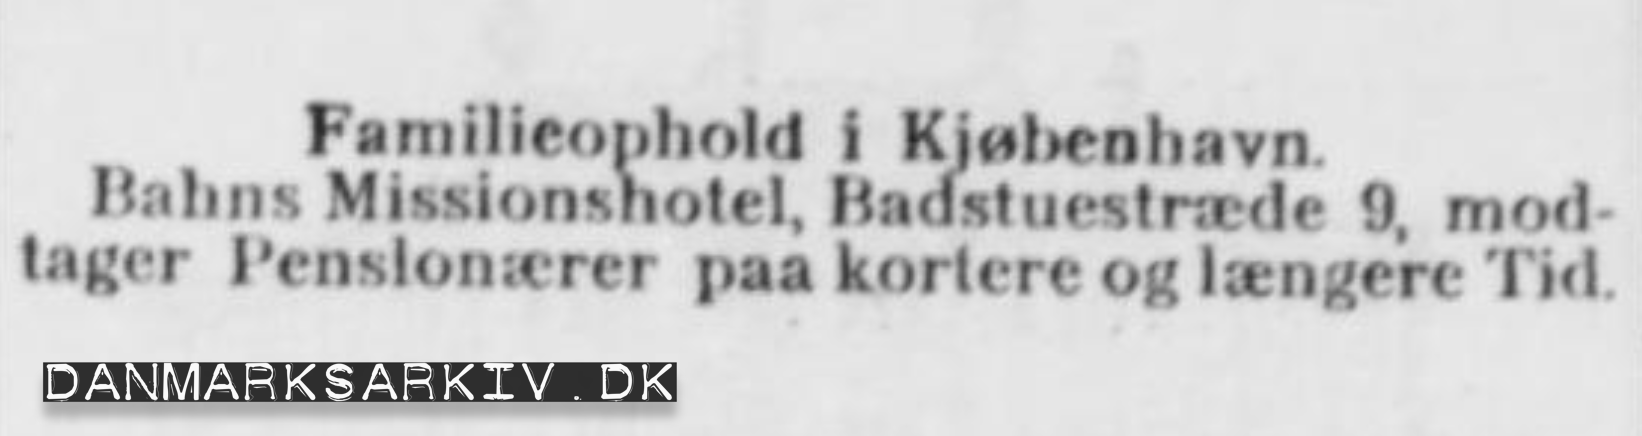 Familieophold i Kjøbenhavn - Bahns Missionshotel modtager Pensionærer paa kortere og længere tid - Annonce 1908